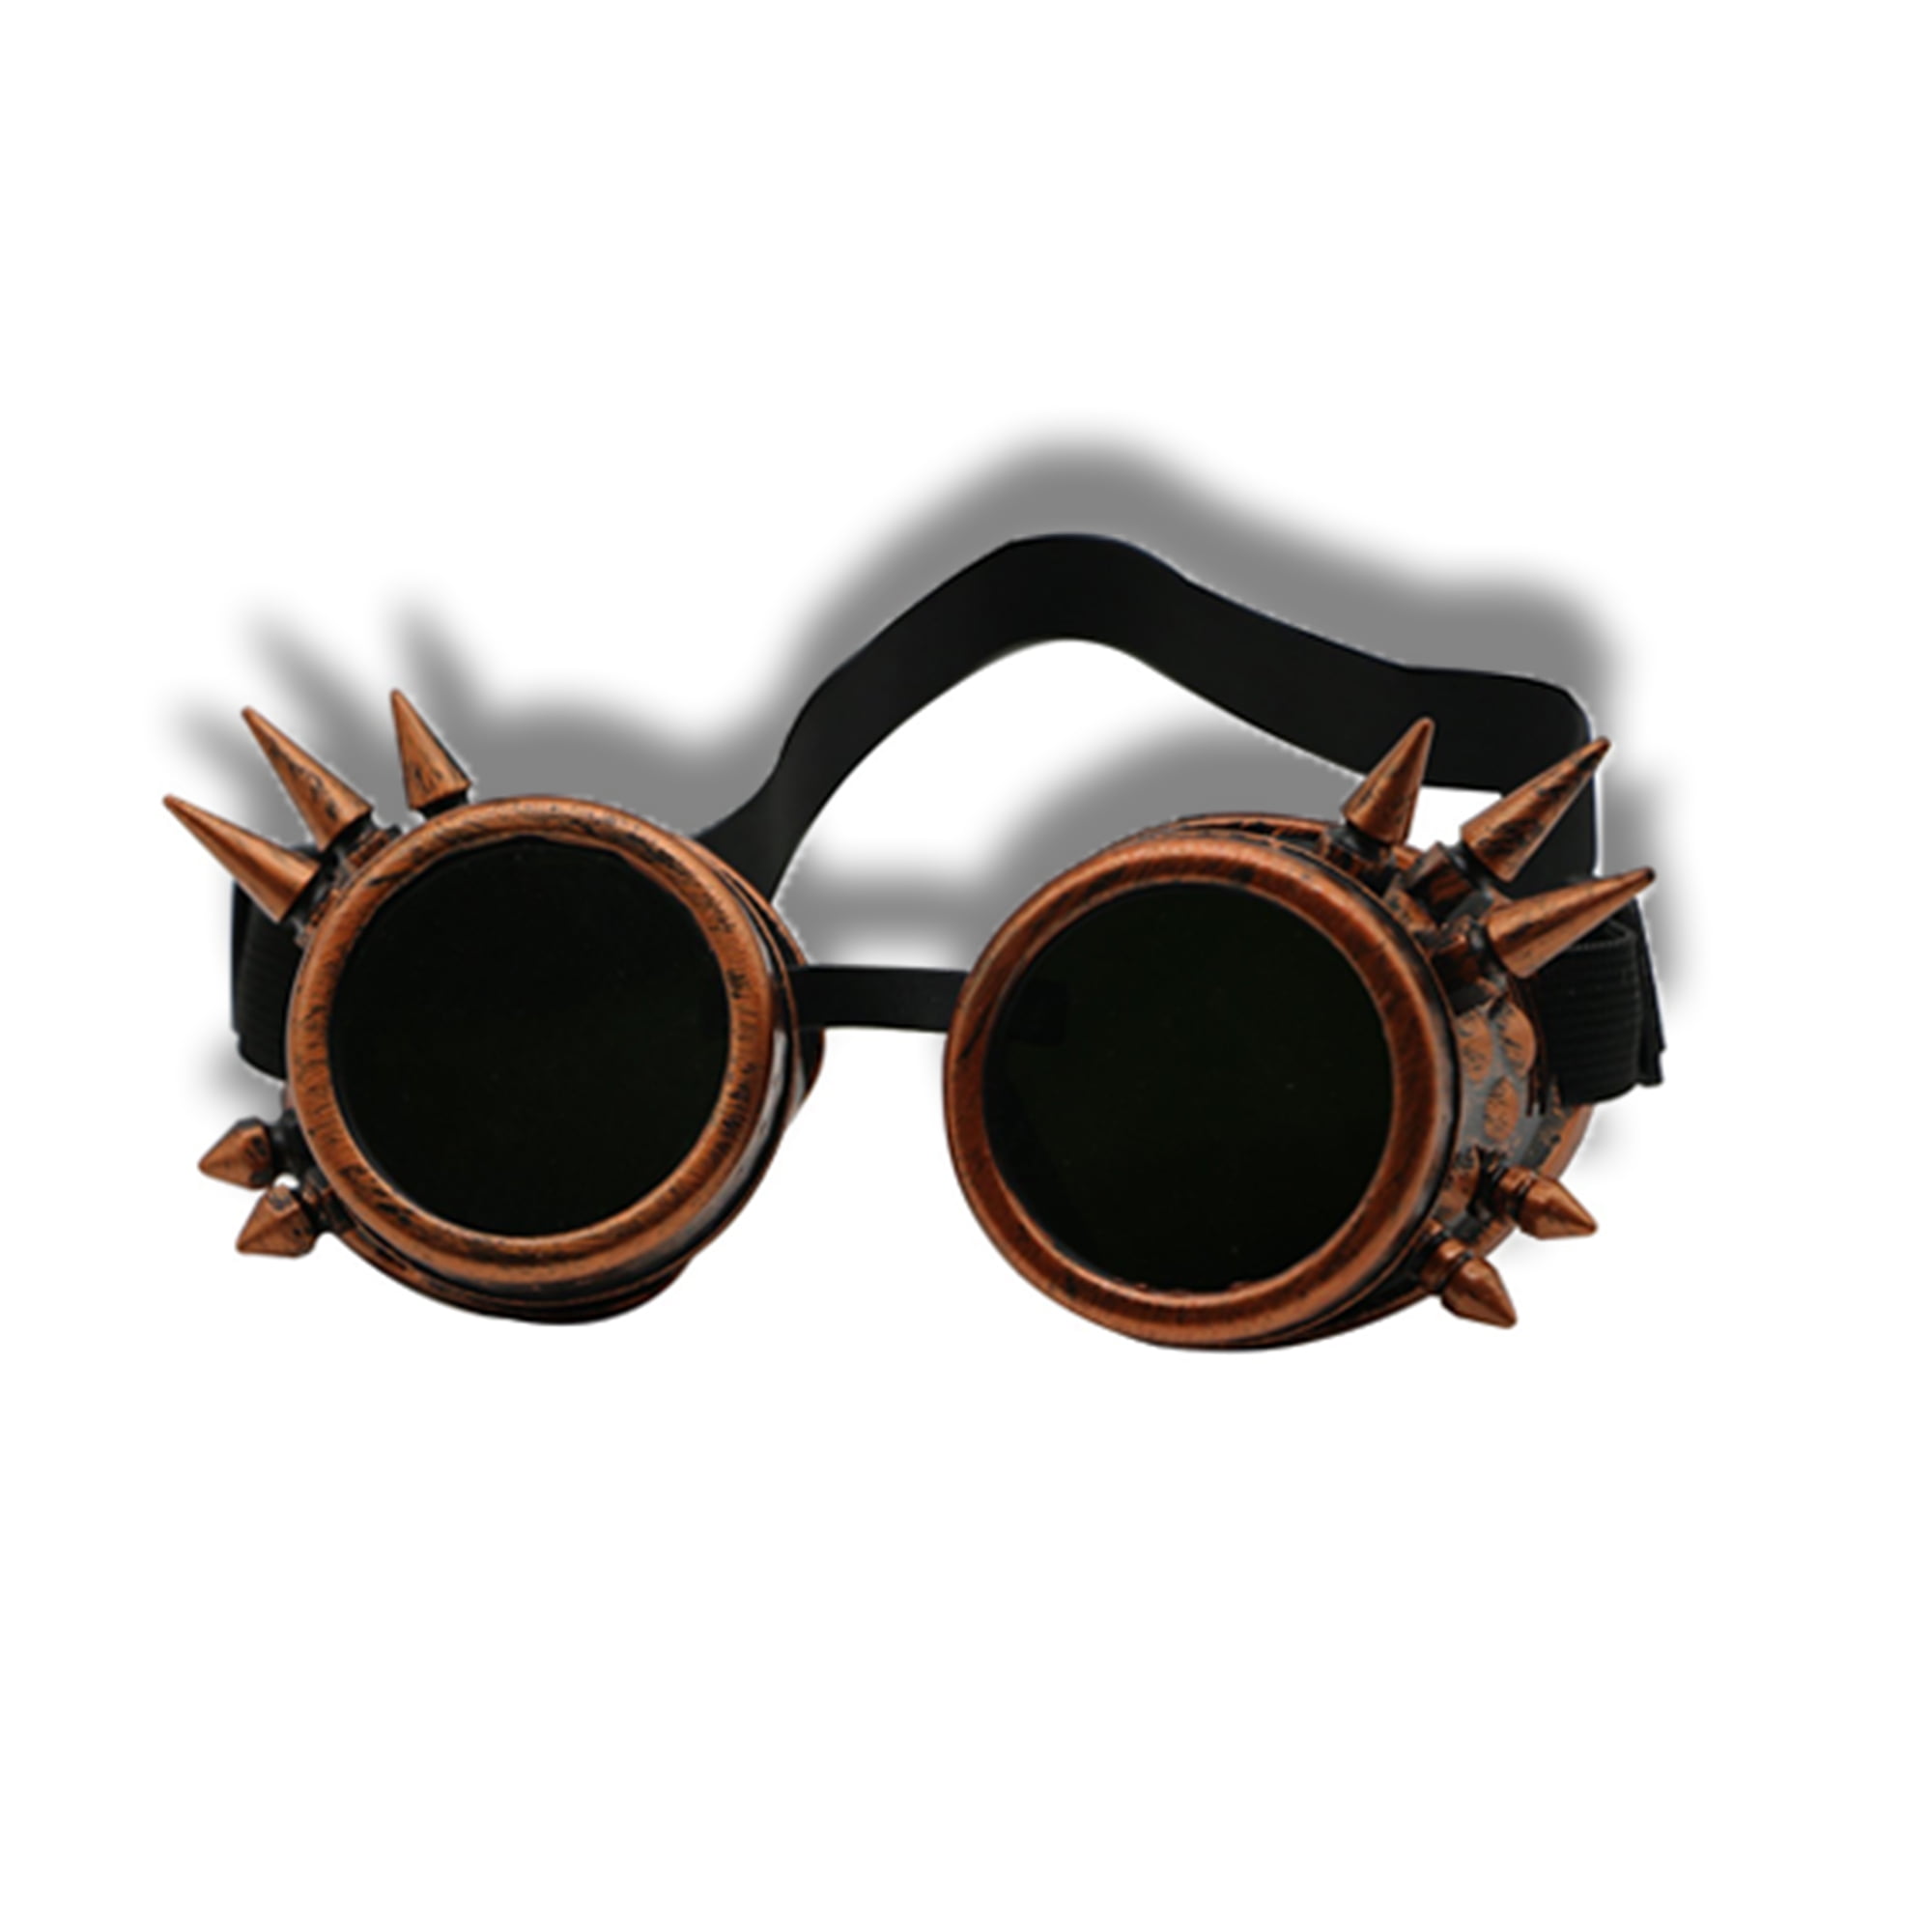 Cfgoggle Cfgoggle Steampunk Goggles Welding Gothic Glasses Outdoor Sunglasses Black Glass 